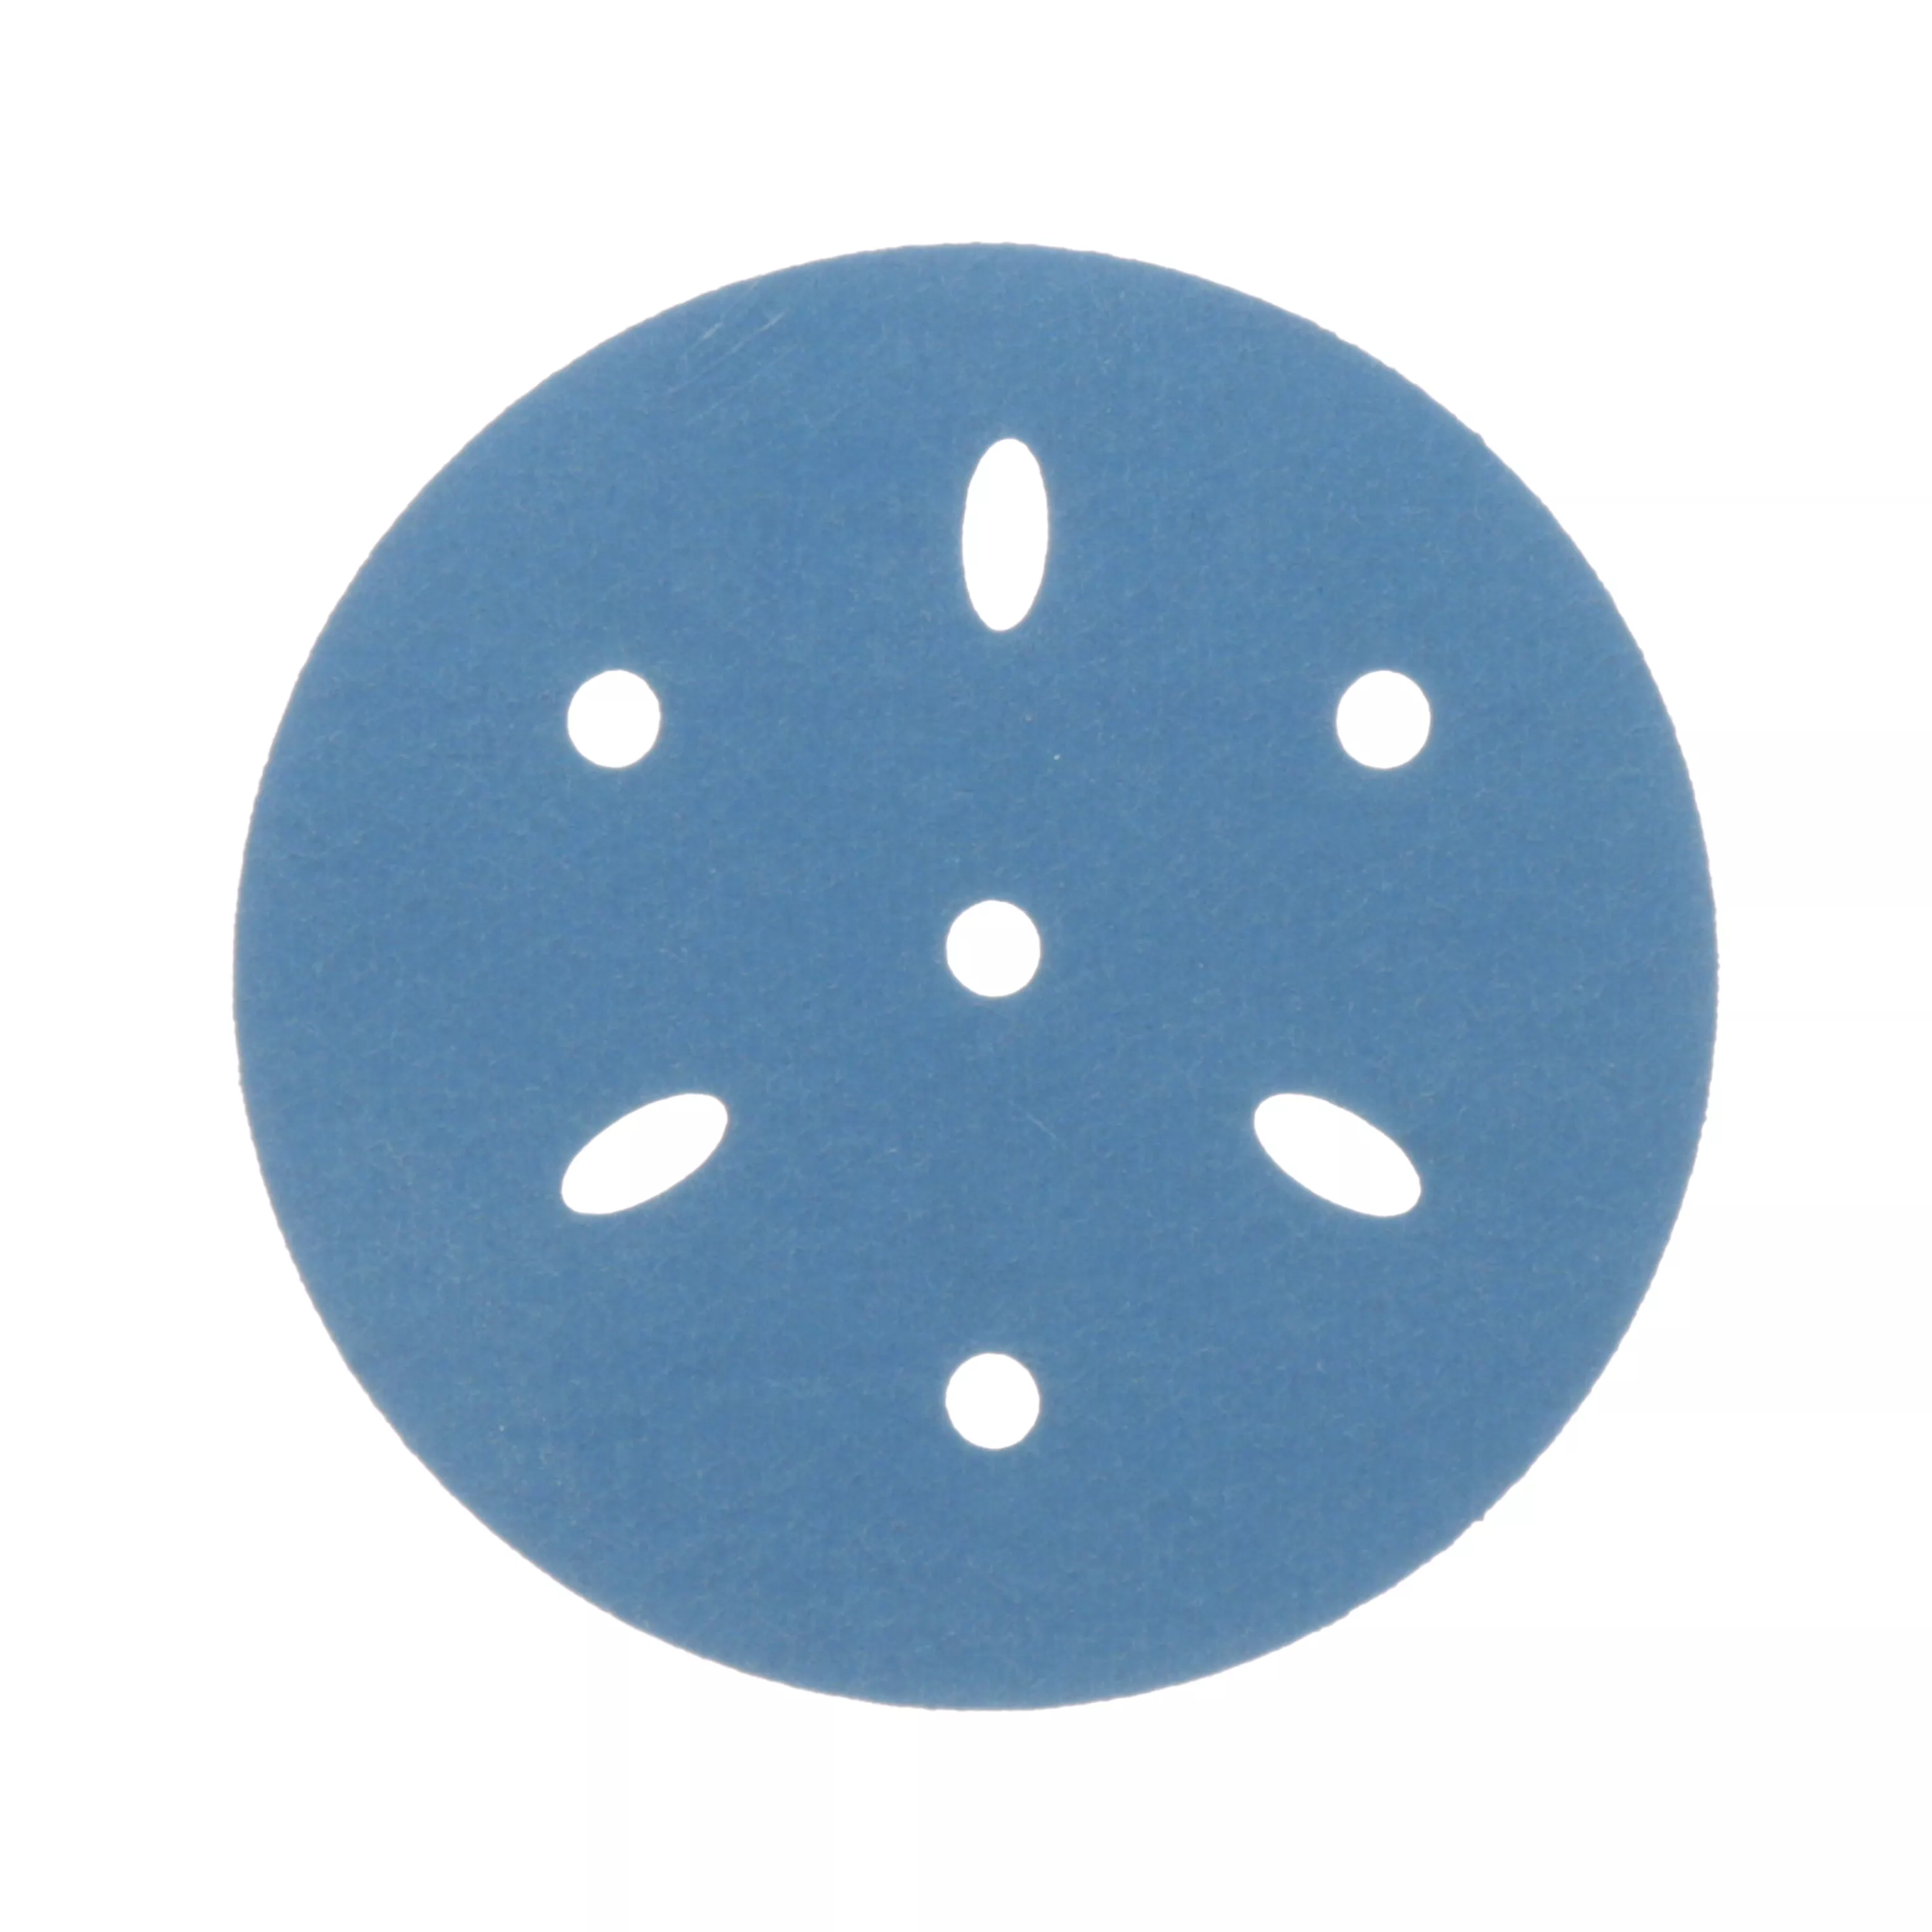 3M™ Hookit™ Blue Abrasive Disc 321U, 36150, 3 in, 320 grade, Multi-hole, 50 discs per carton, 4 cartons per case